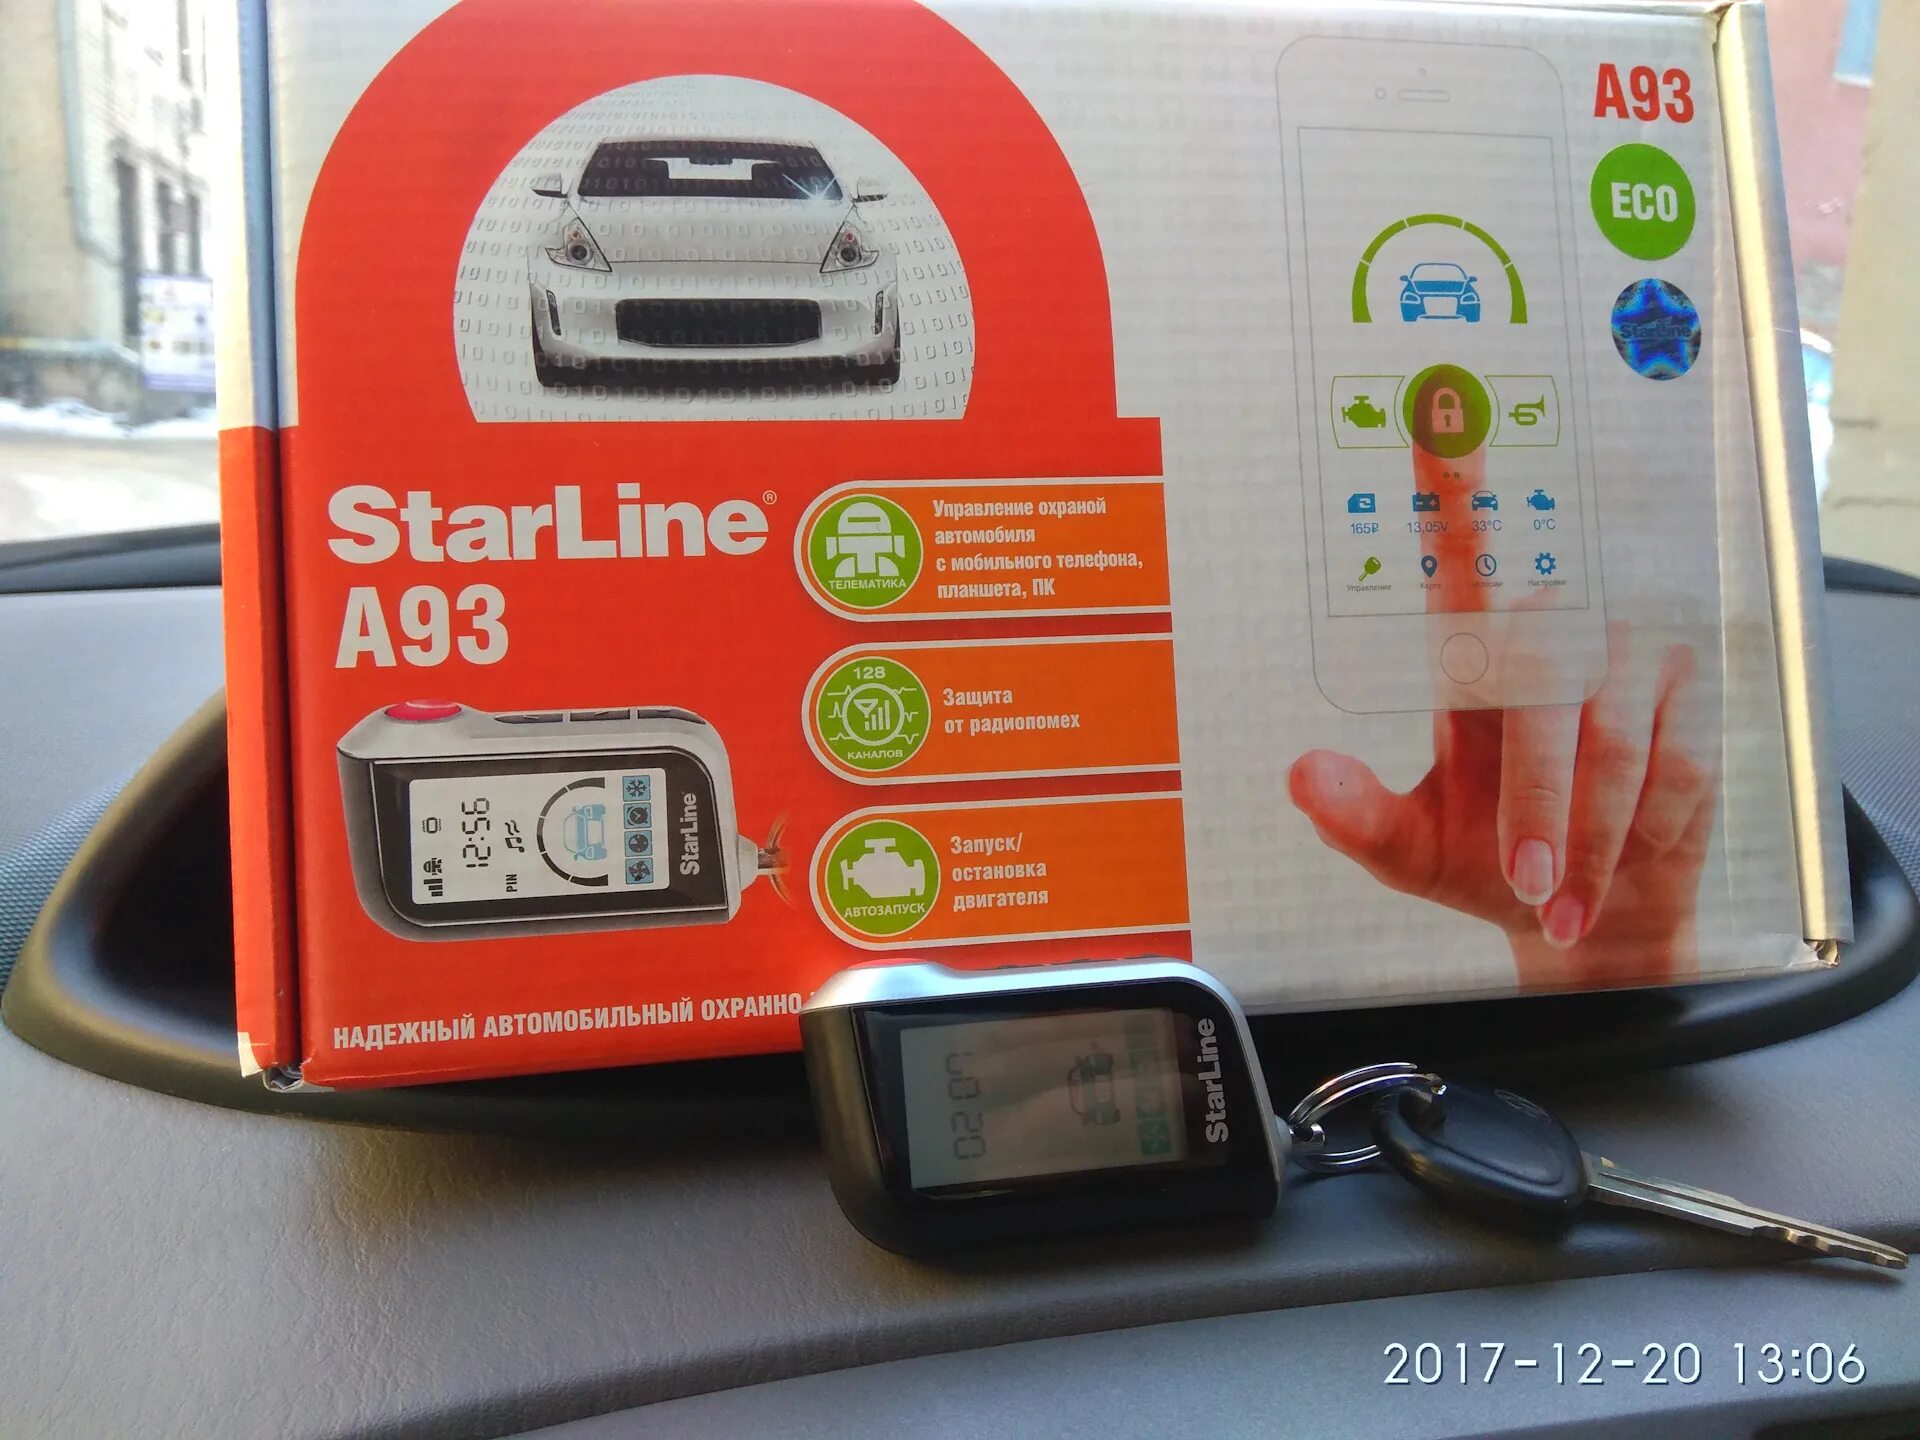 Автосигнализация starline a93 eco. STARLINE a93 Eco. А93 эко комплектация. Старлайн а93 ЕСО.